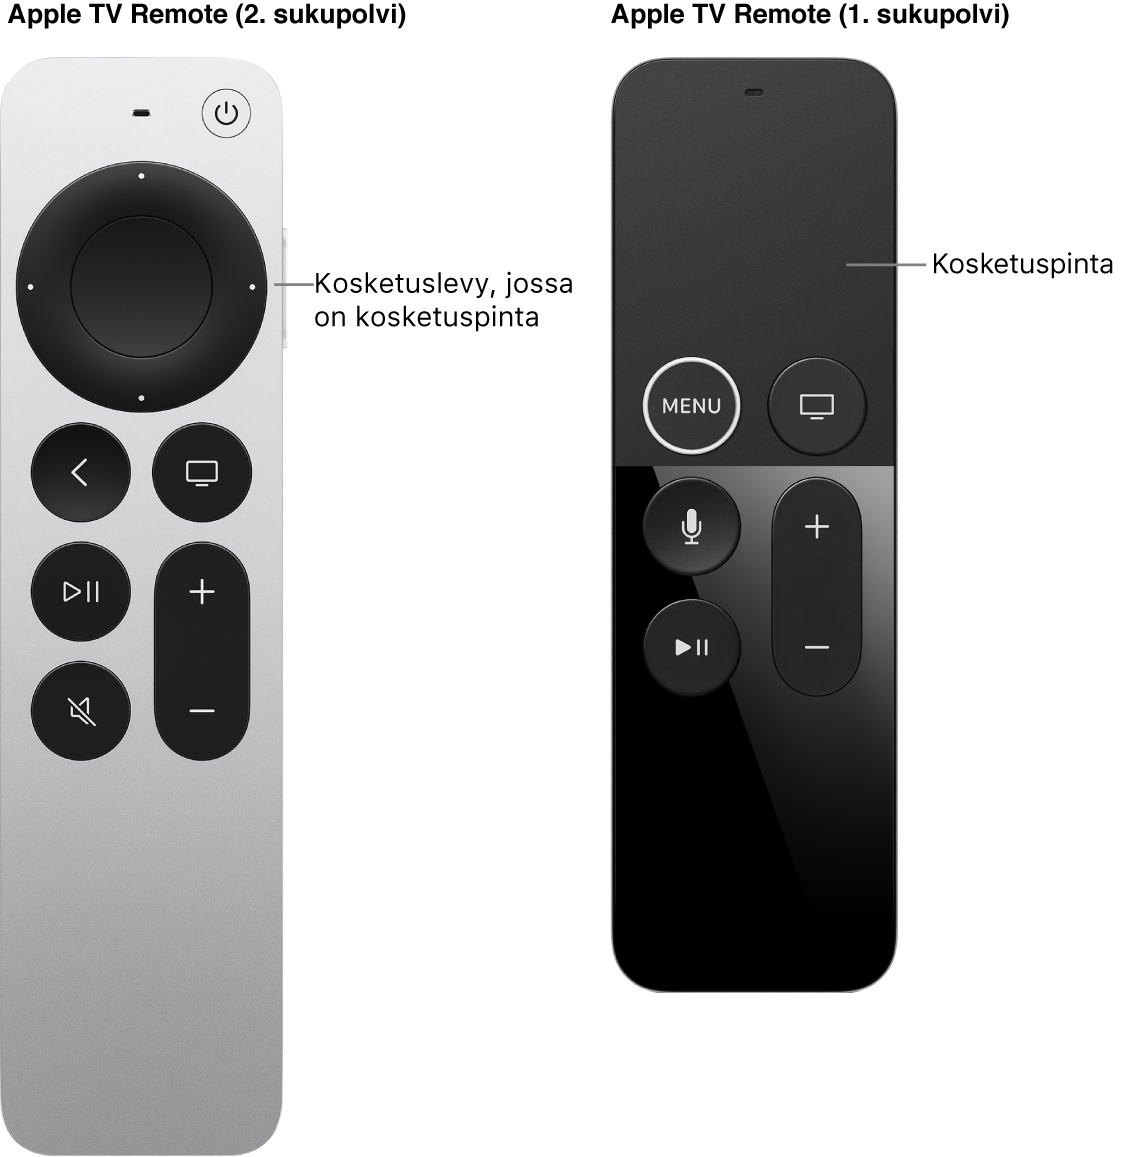 Apple TV Remote (2. sukupolvi), jossa on kosketuslevy, ja Apple TV Remote (1. sukupolvi), jossa on kosketuspinta